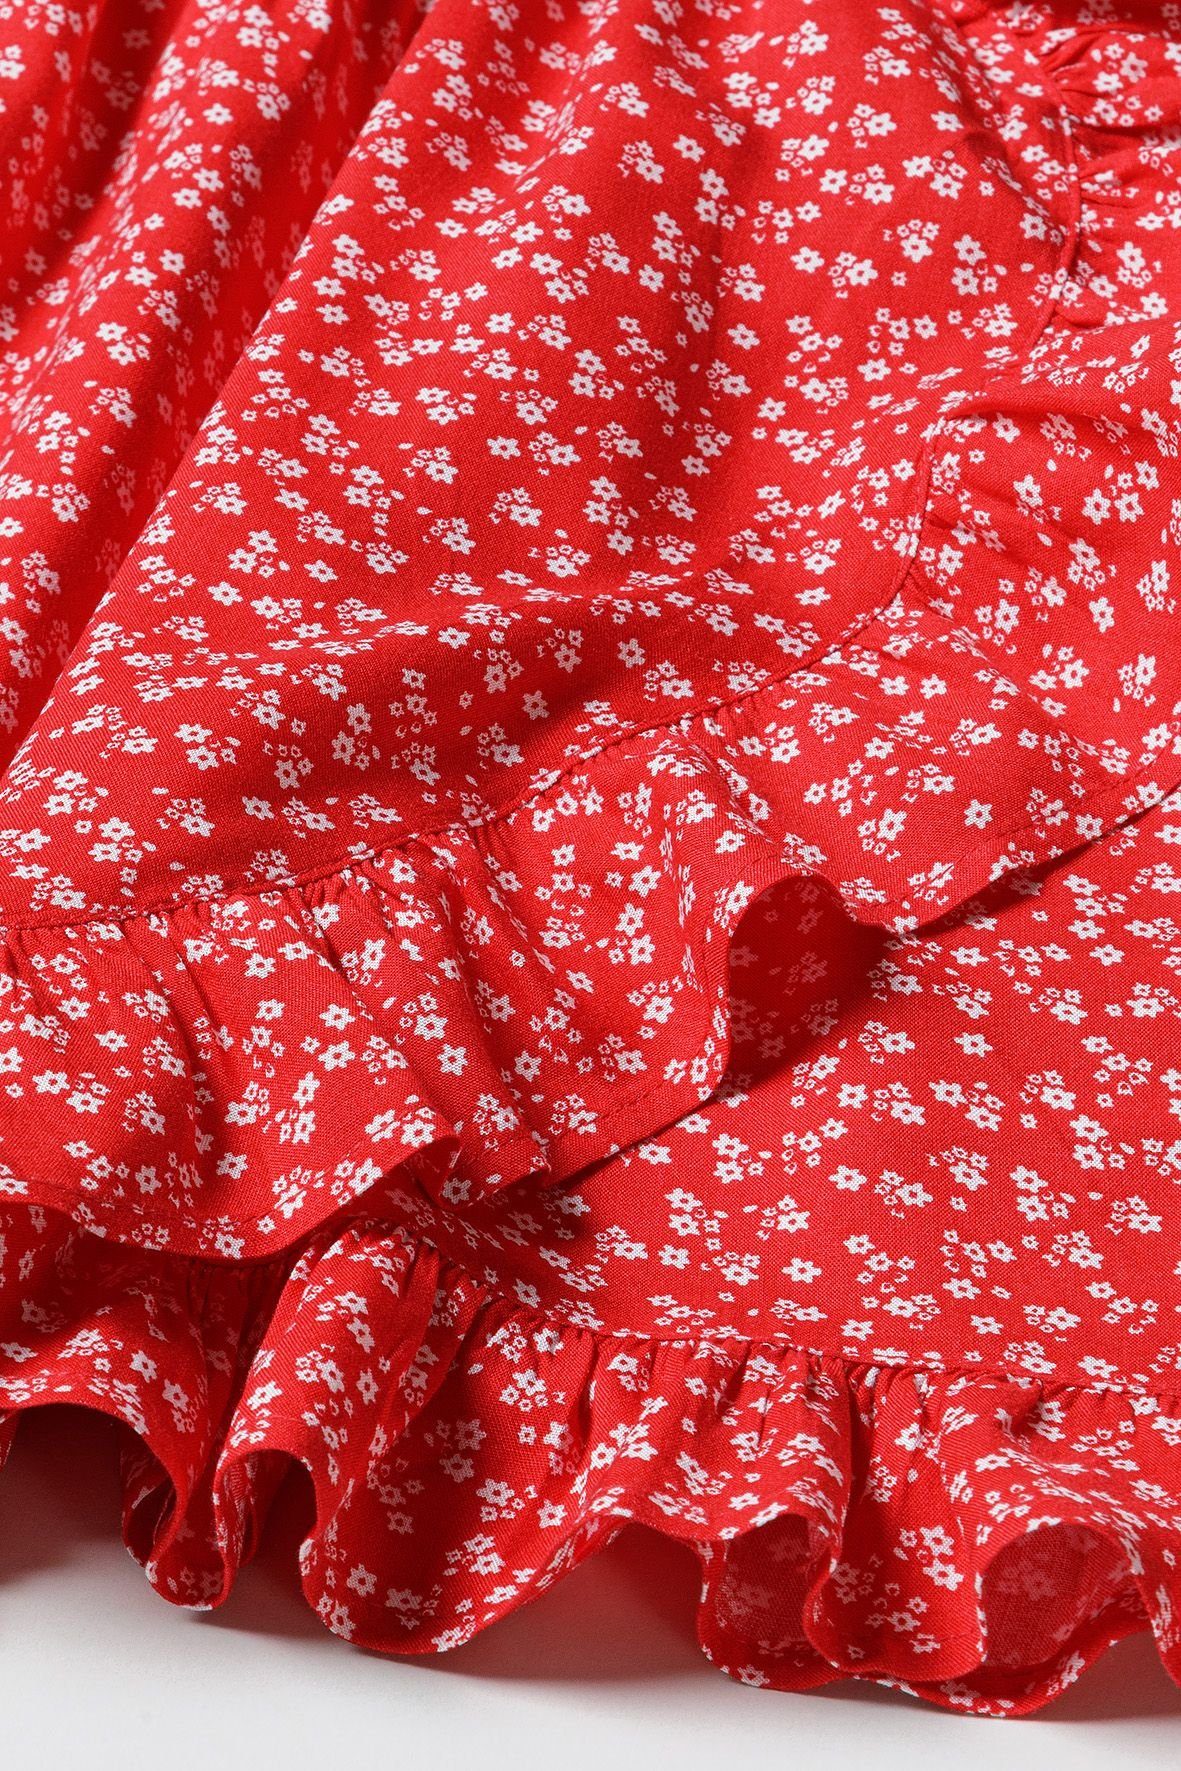 MINOTI Wickelkleid Rot (3y-14y) Sommerkleid